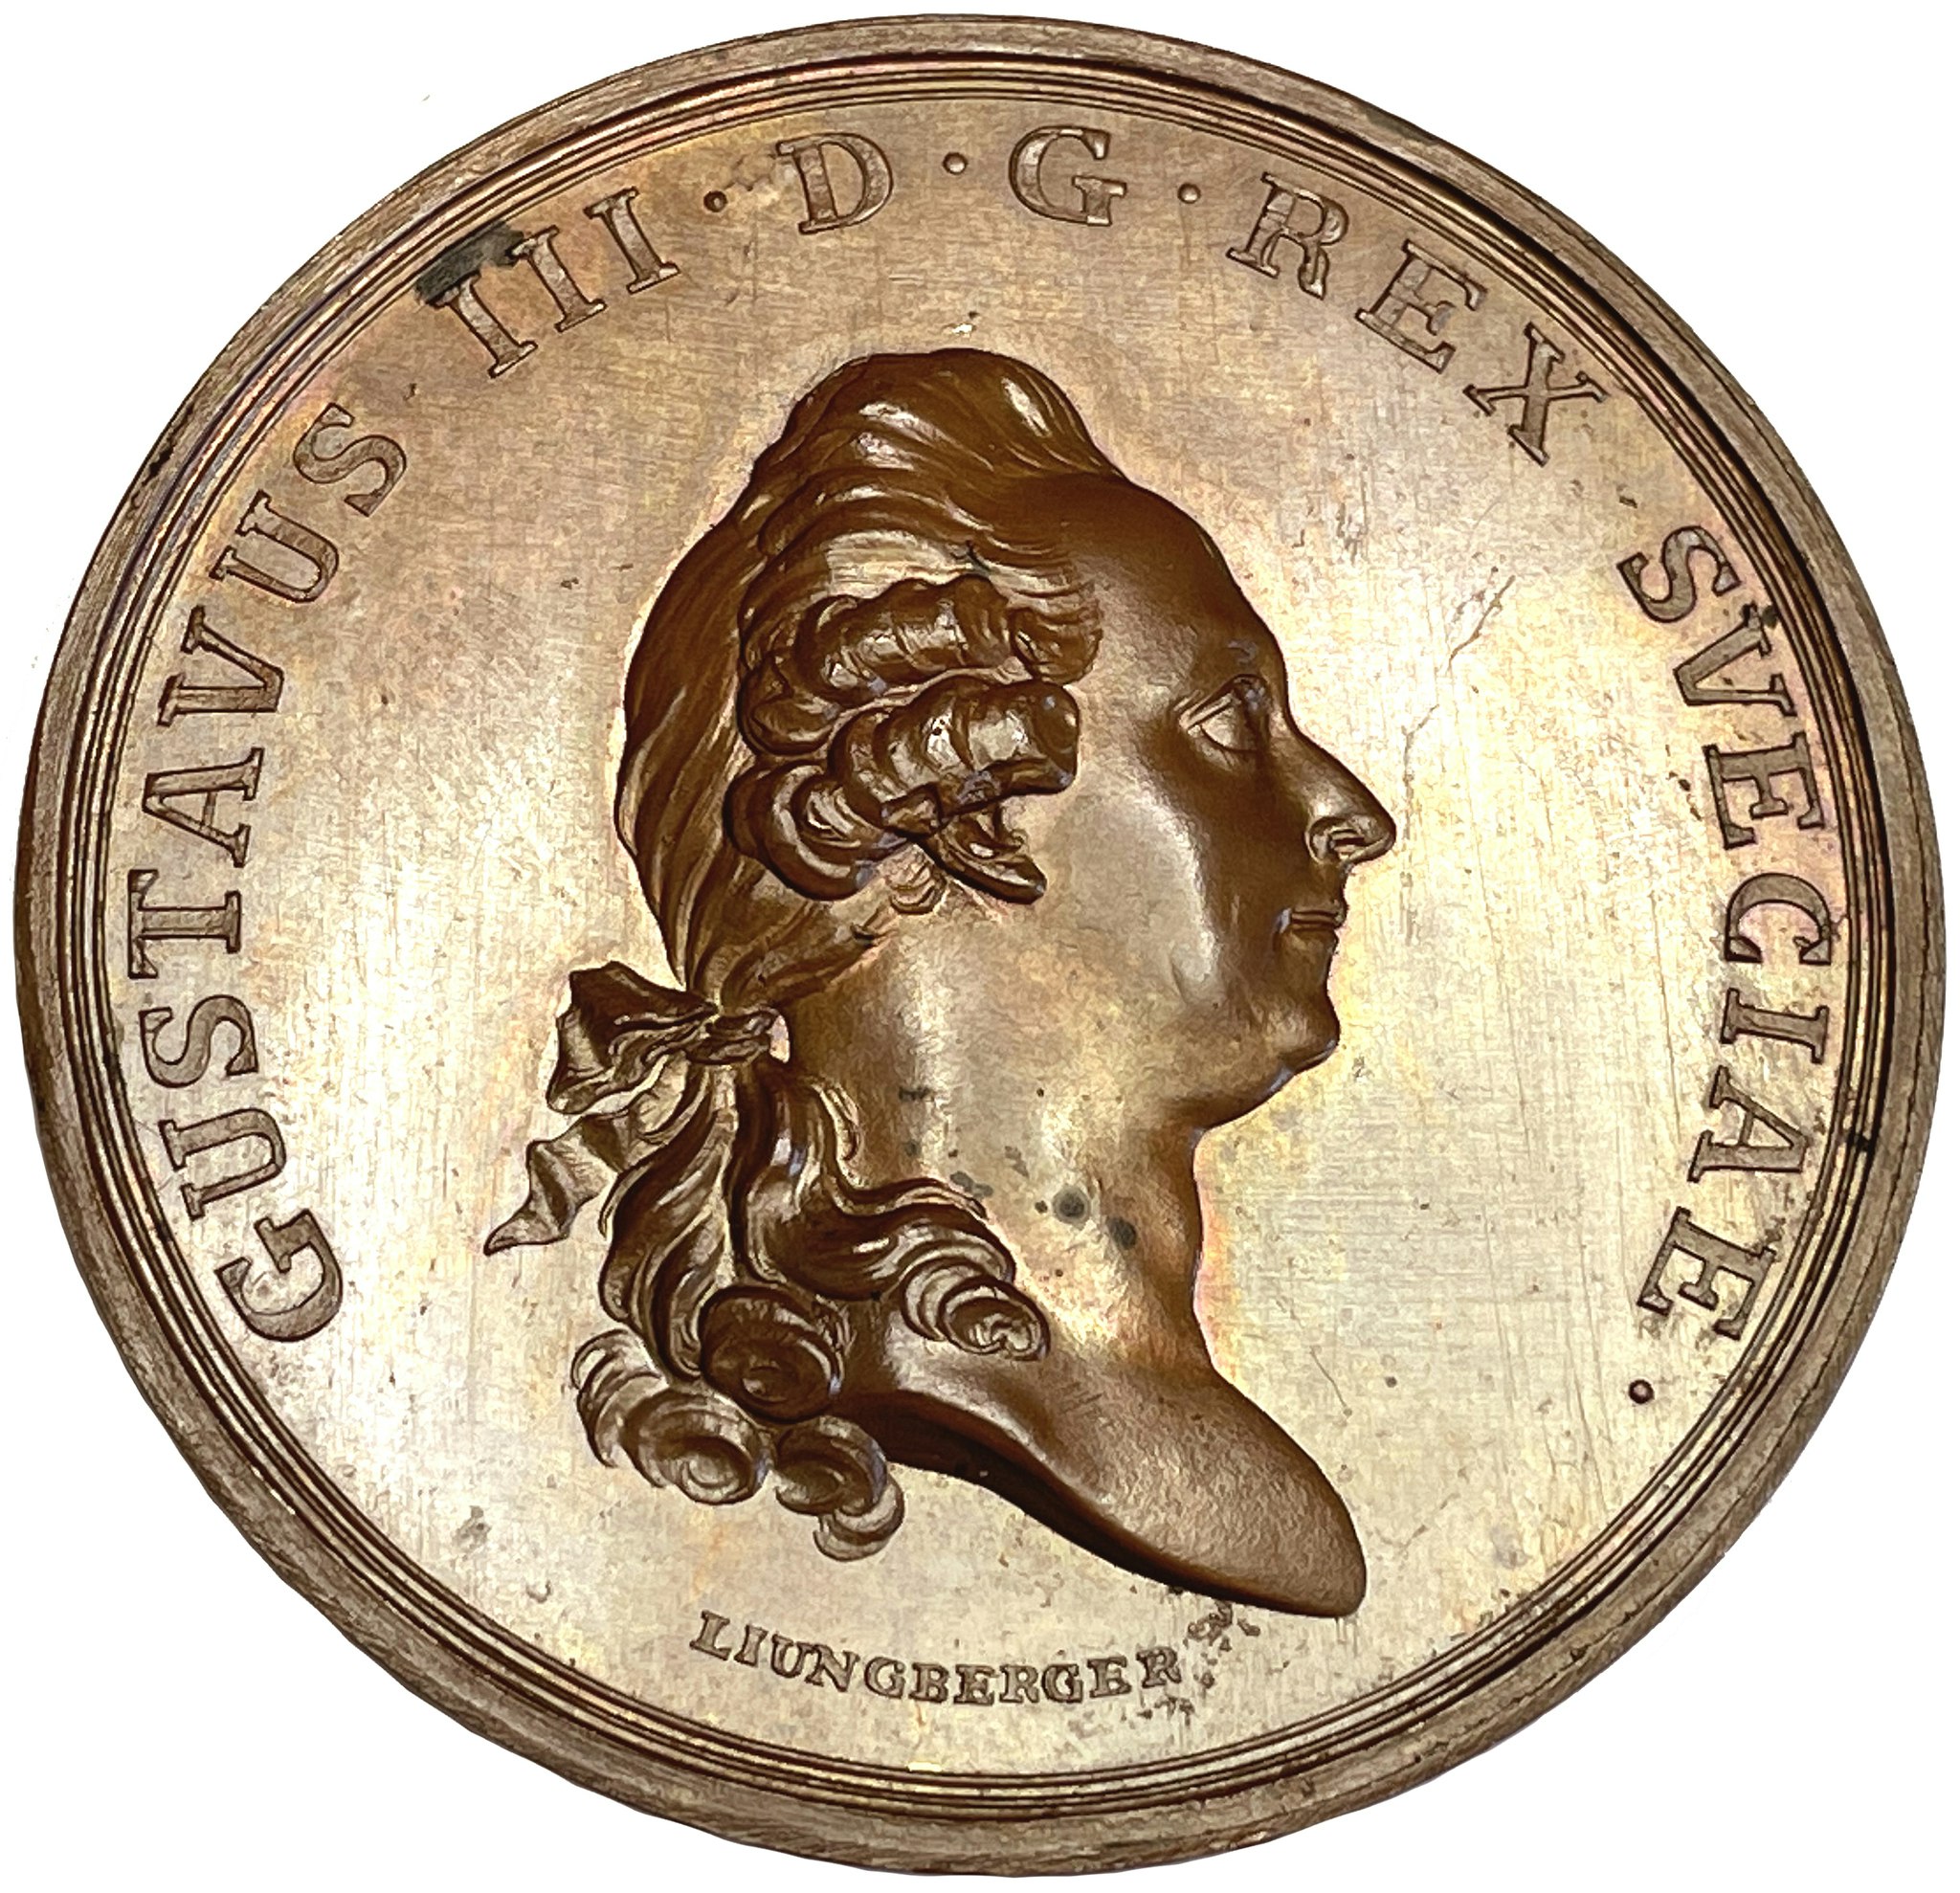 Gustav III - Konungens omsorg att skydda Sveriges handel och sjöfart 1782 - Ocirkulerat toppexemplar av Gustaf Ljungberger - Extremt sällsynt